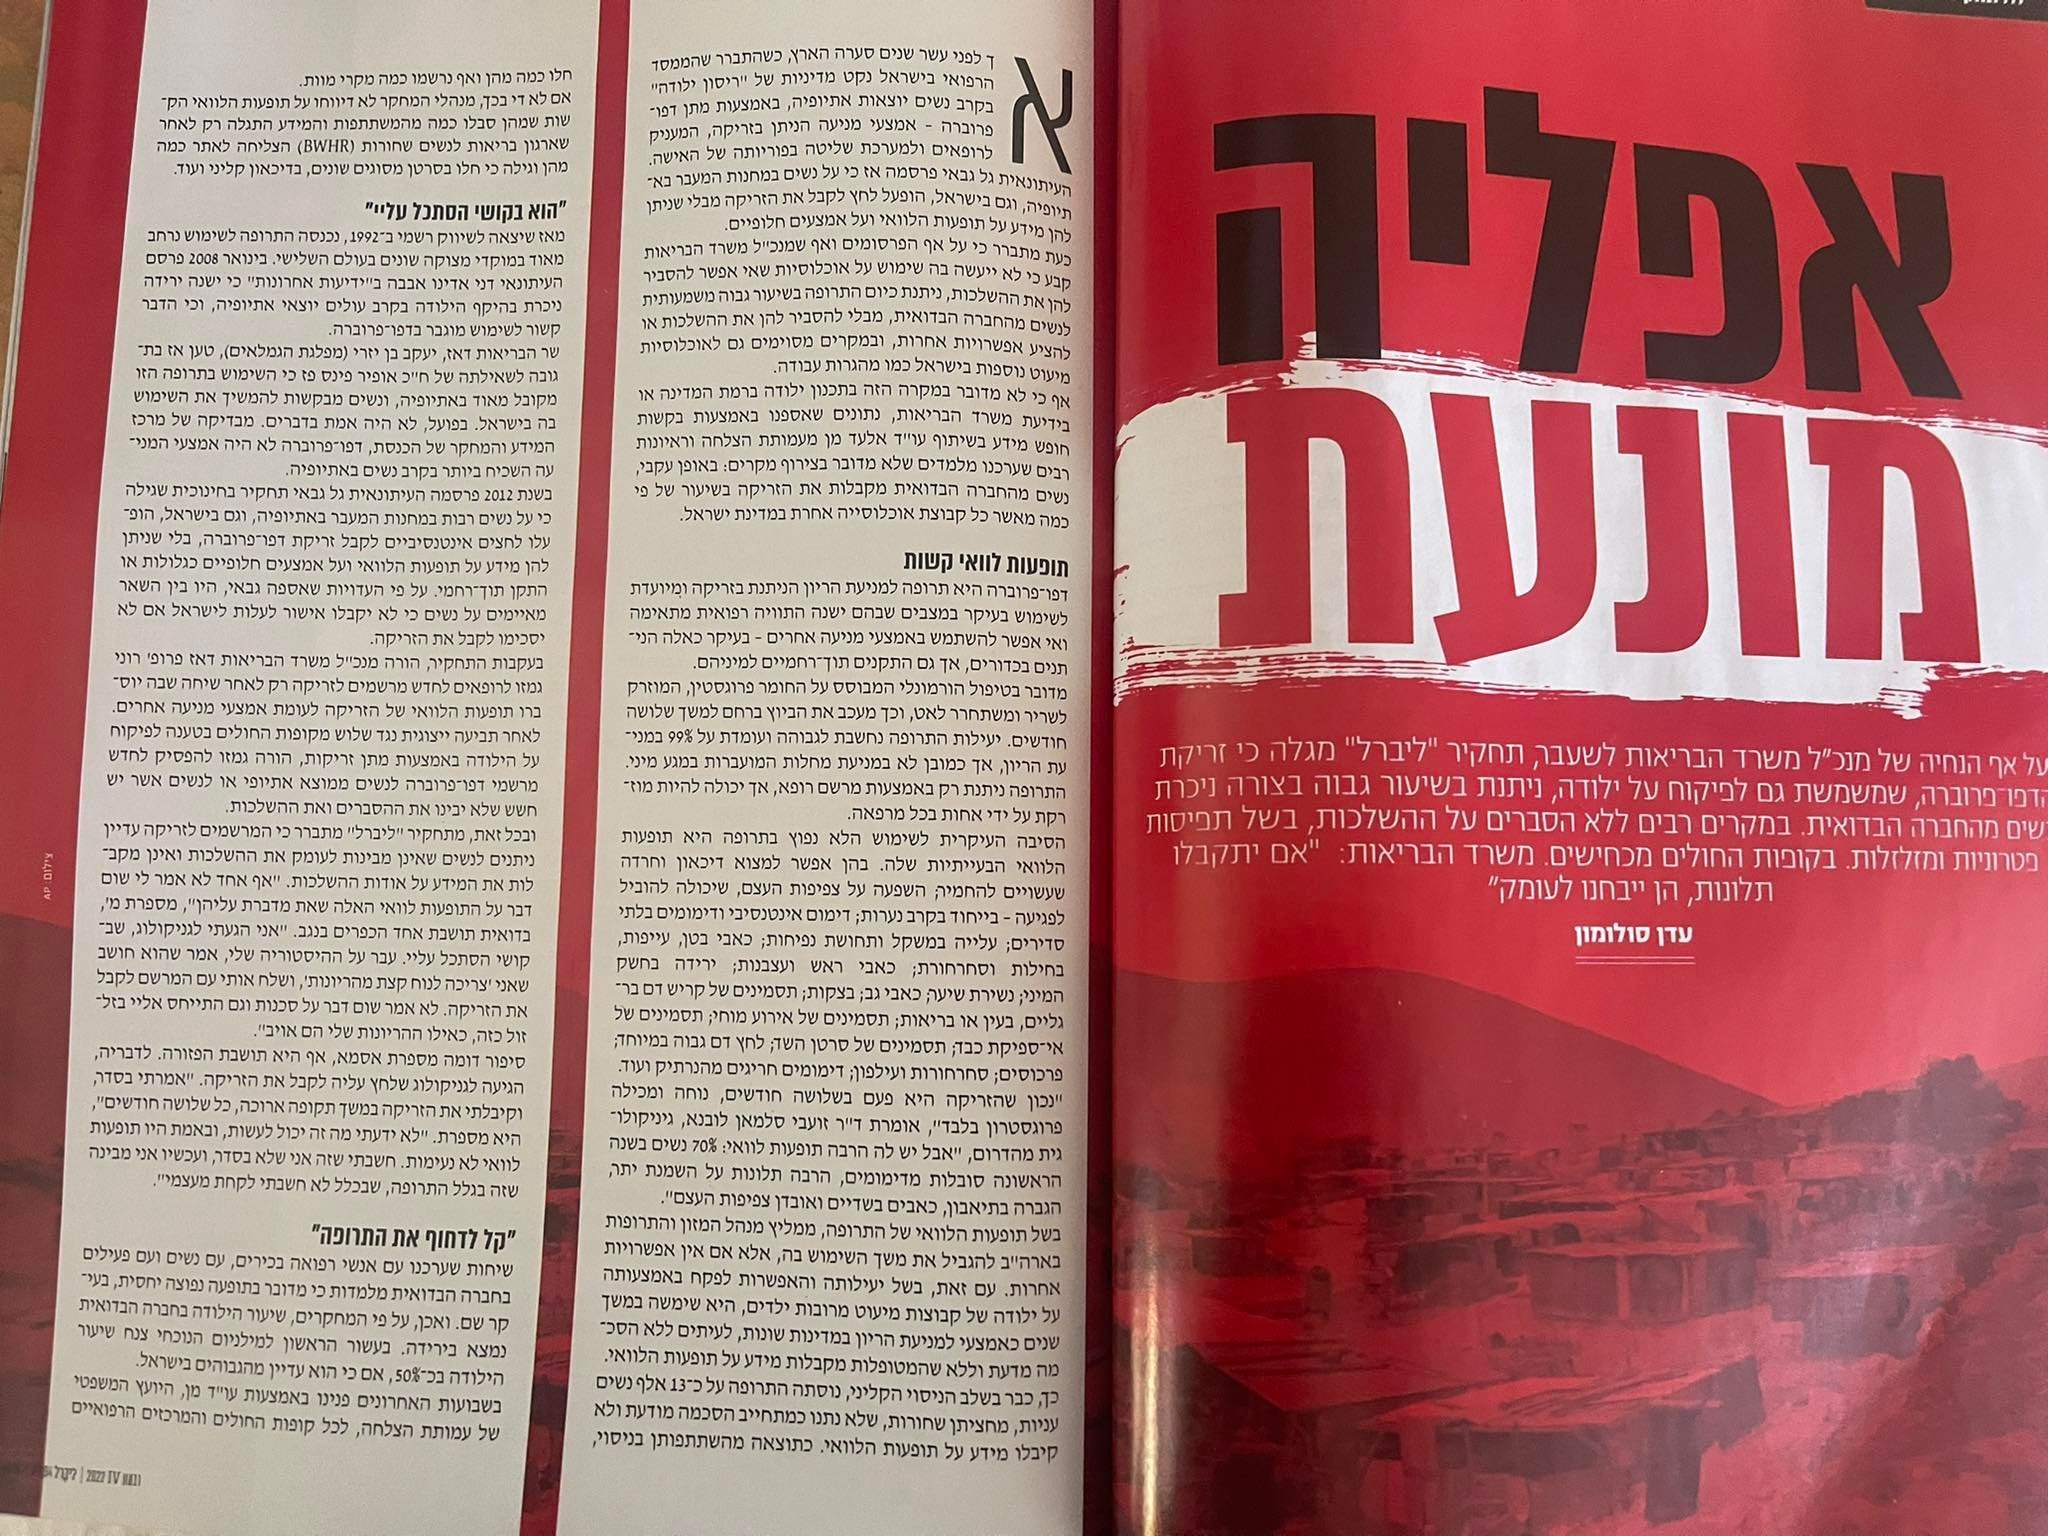 تحقيق نشرته مجلة ""ليبرال" العبرية 